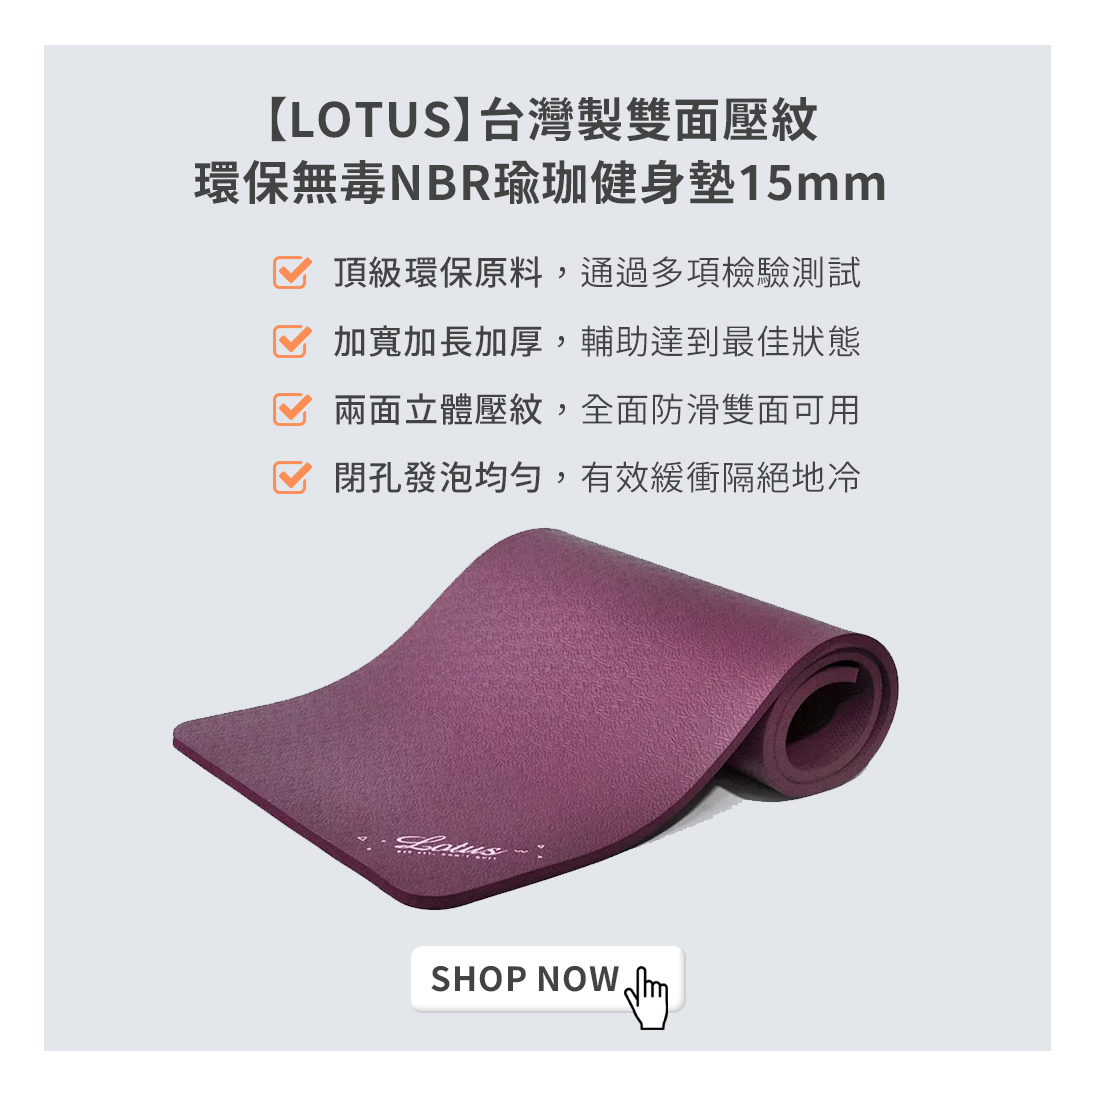 LOTUS台灣製雙面壓紋環保無毒健身墊，採用頂級環保原料，通過多項檢驗測試，加寬加長加厚，輔助達到最佳運動效果